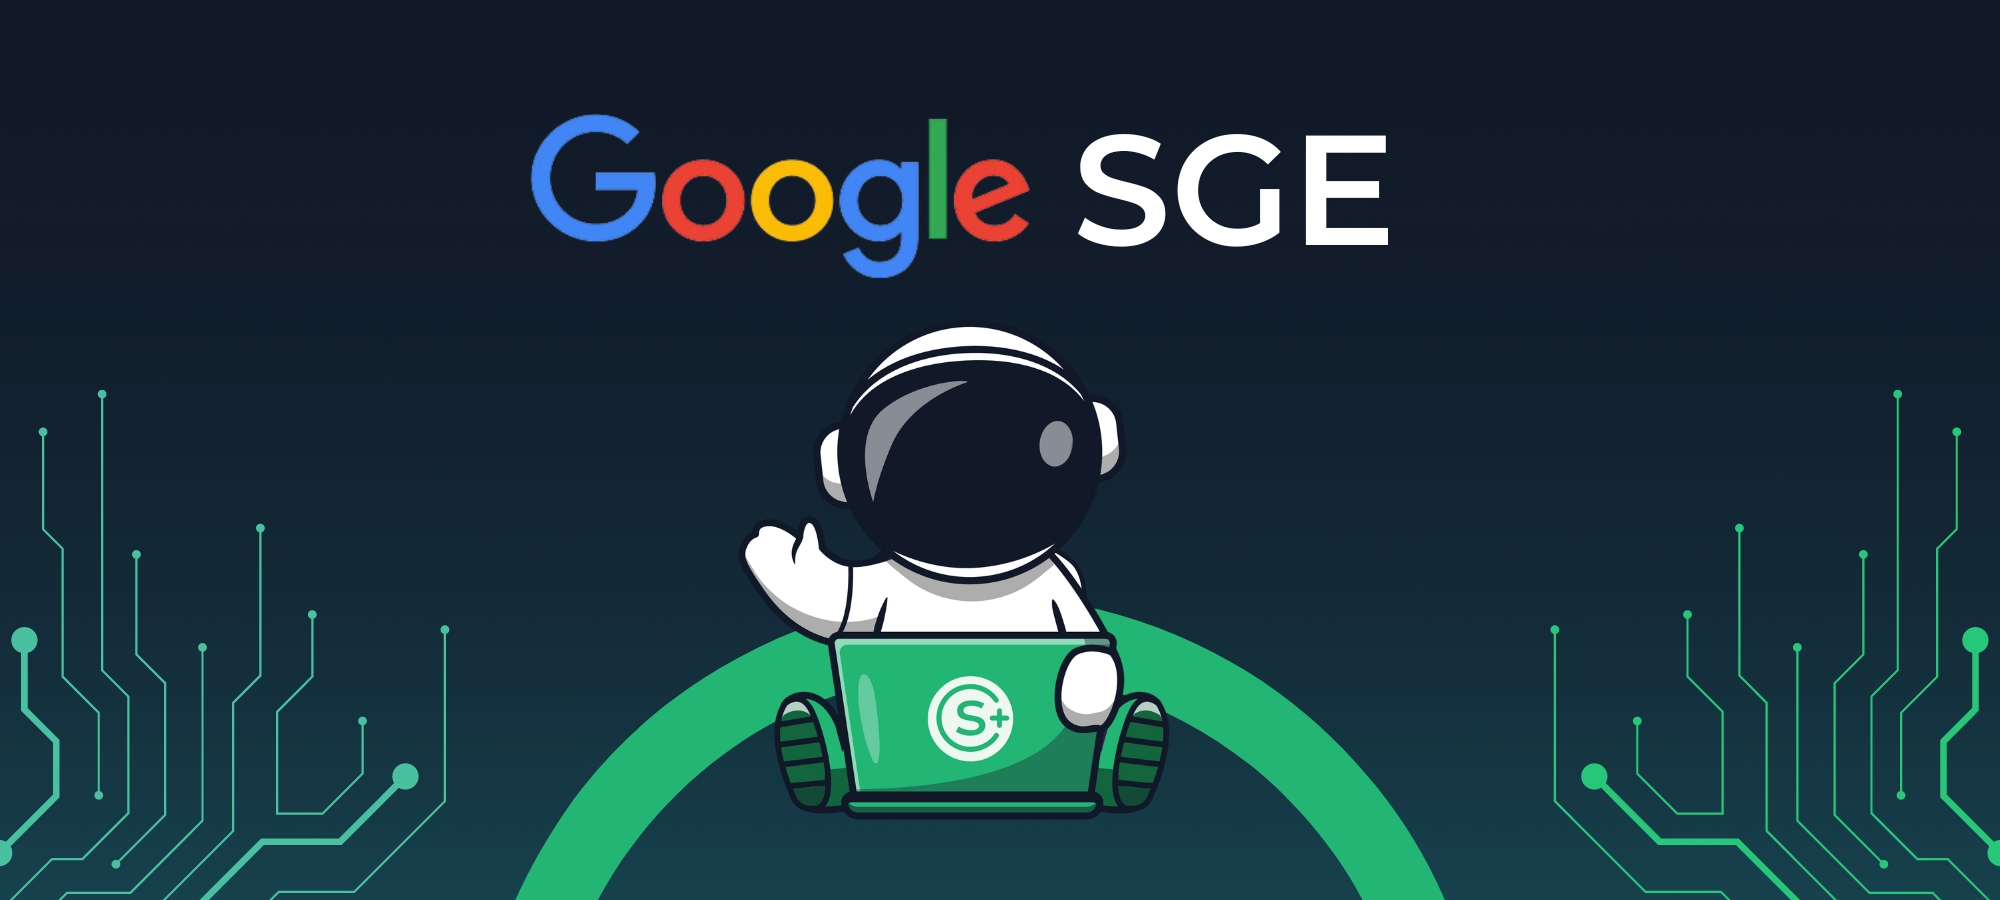 Revoluciona tu forma de interactuar en la web con google SGE